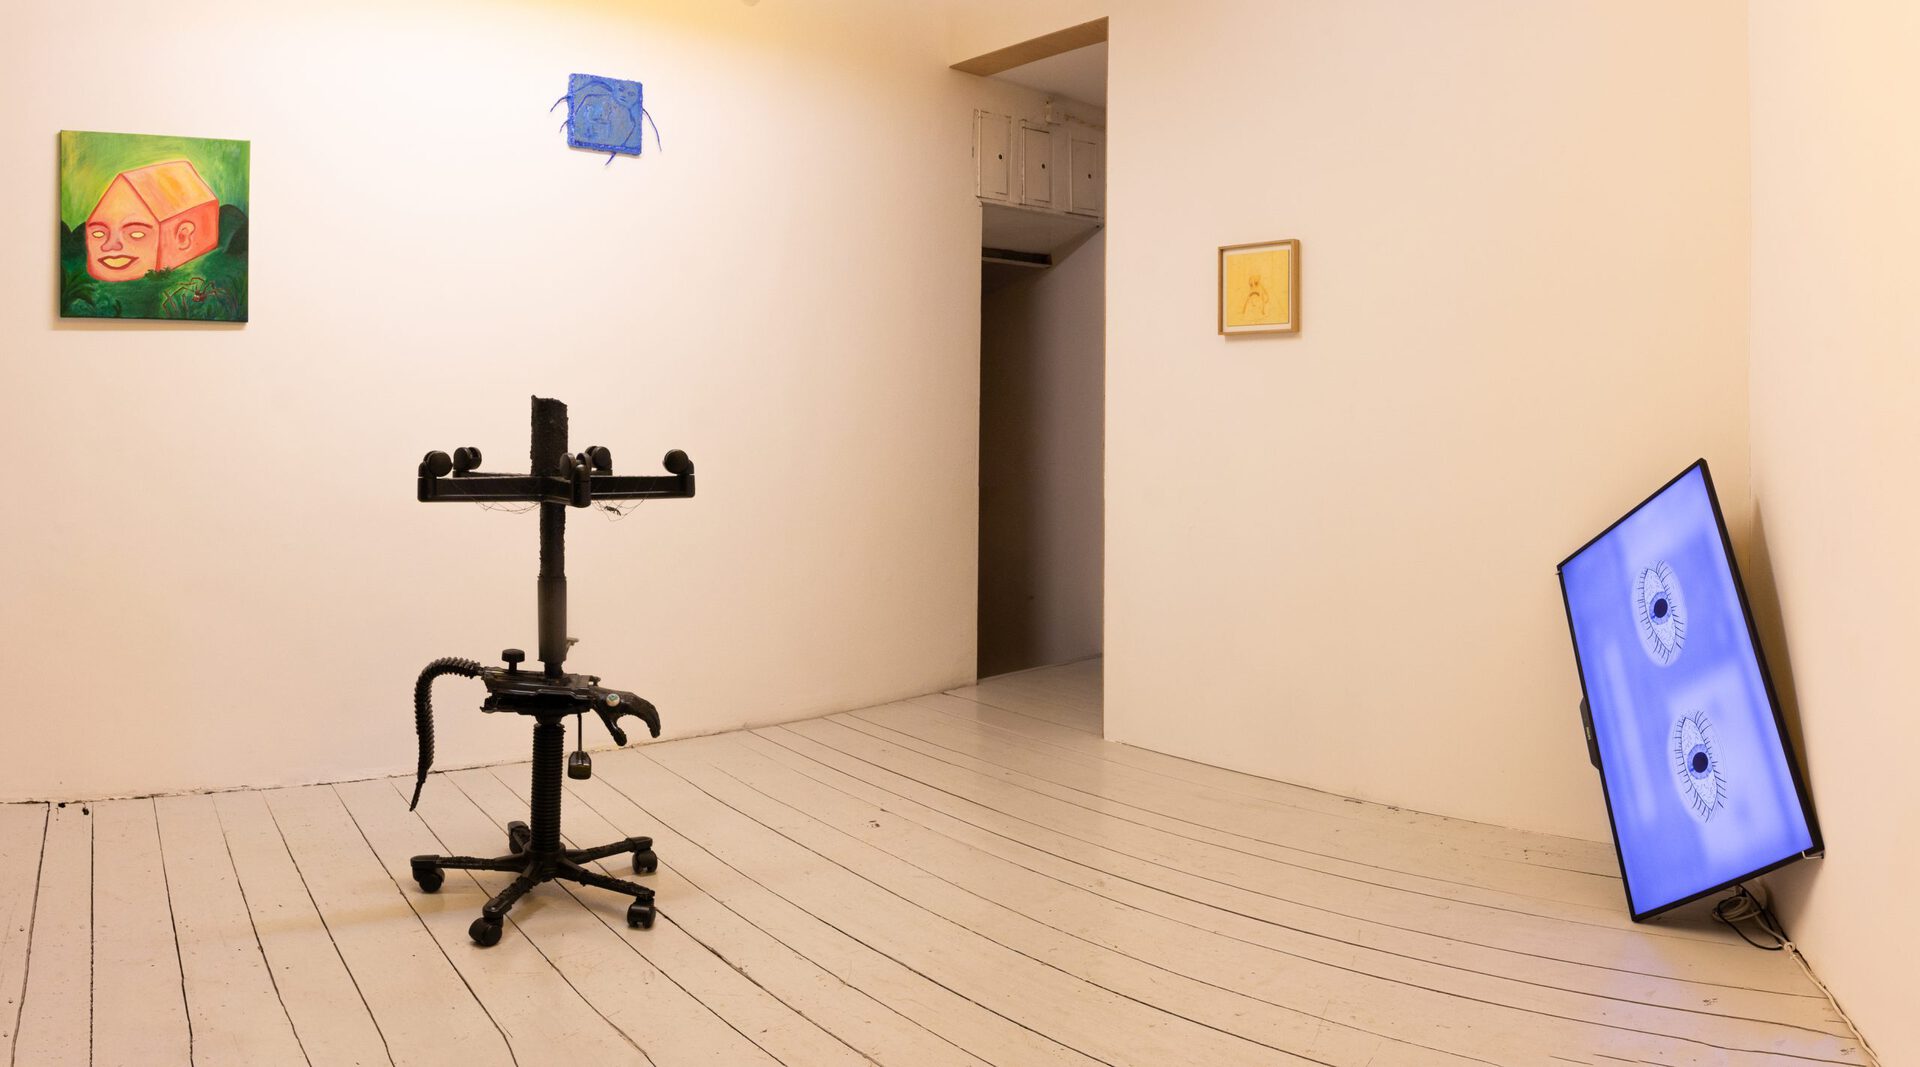 Rafał Żarski, Eye, hand, chair - exhibition view - Łęctwo gallery, 1